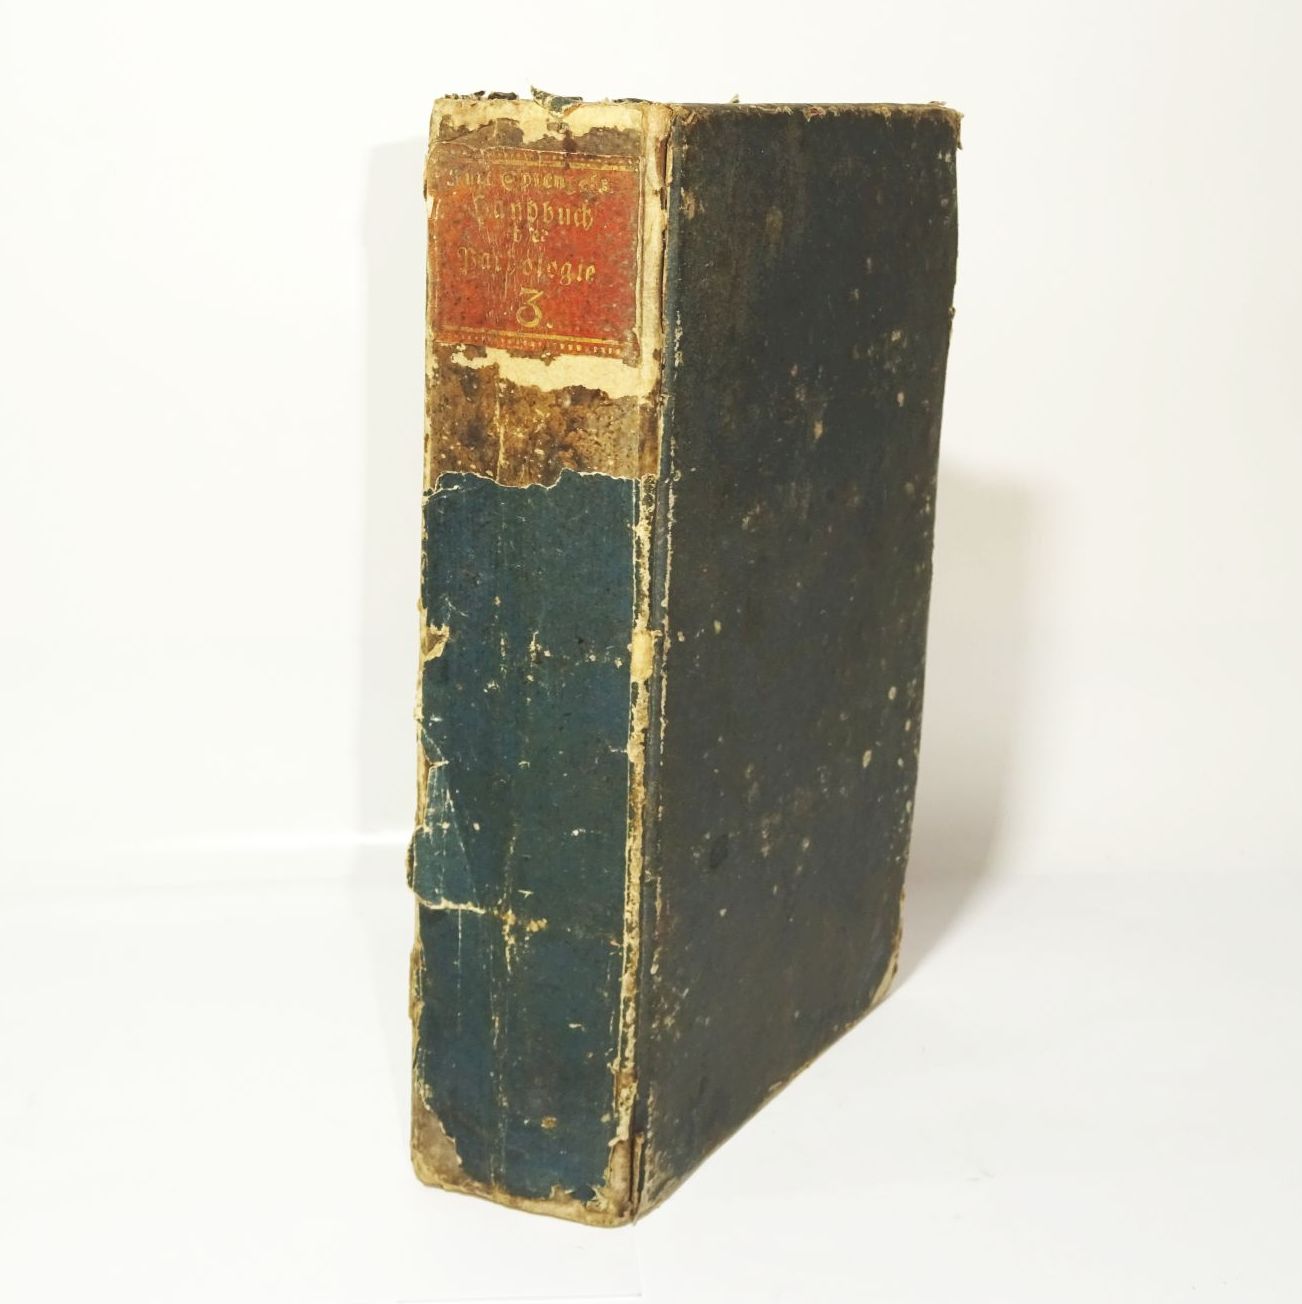 Handbuch der Pathologie Kurt Sprengel 1797 Leipzig 3 Band